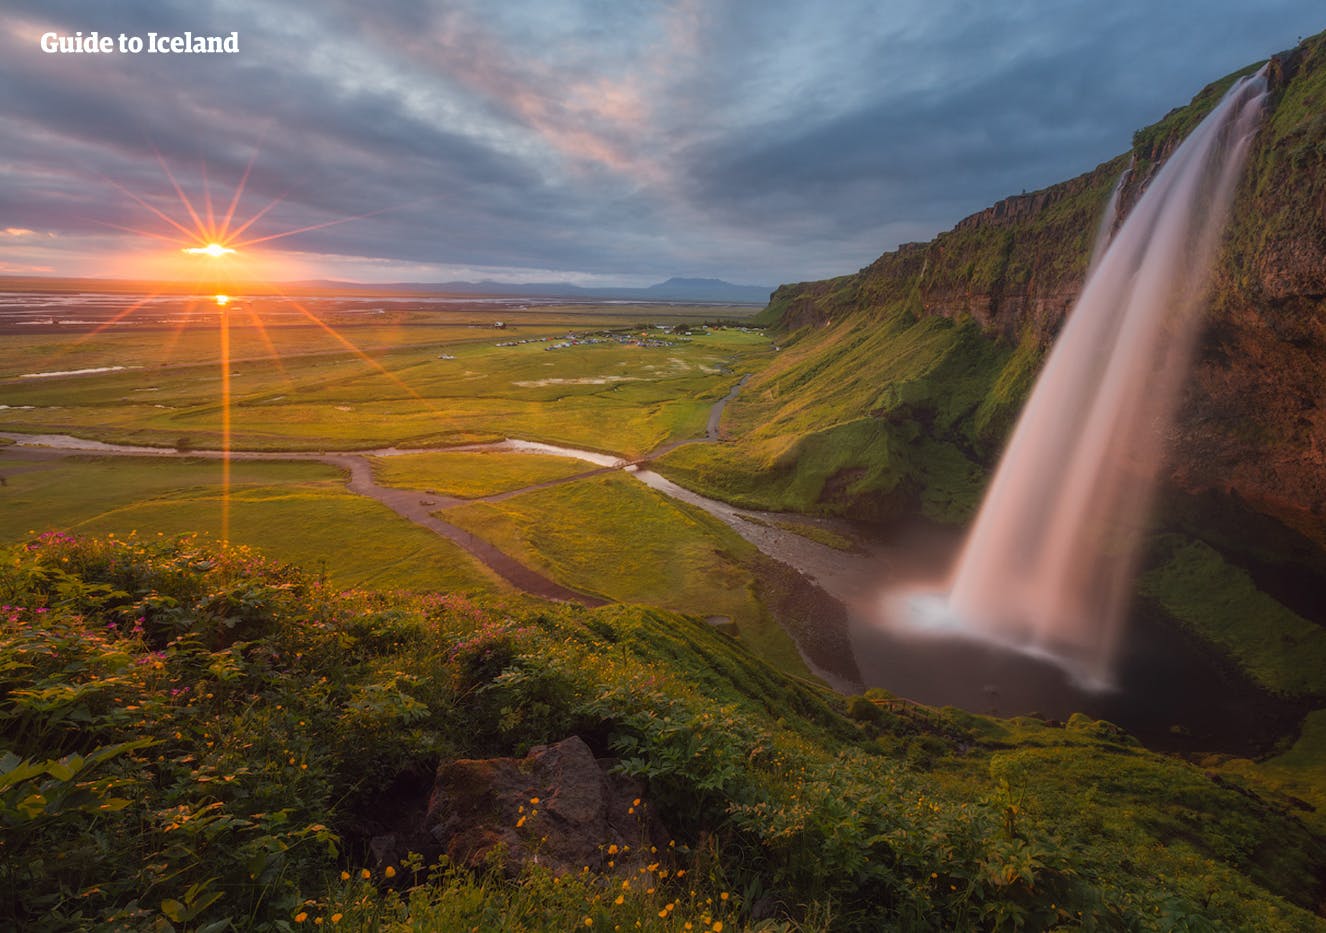 พระอาทิตย์ตกที่น้ำตกเซลยาแลนศ์ฟอสส์ หนึ่งในน้ำตกที่มีเอกลักษณ์ที่สุดของไอซ์แลนด์